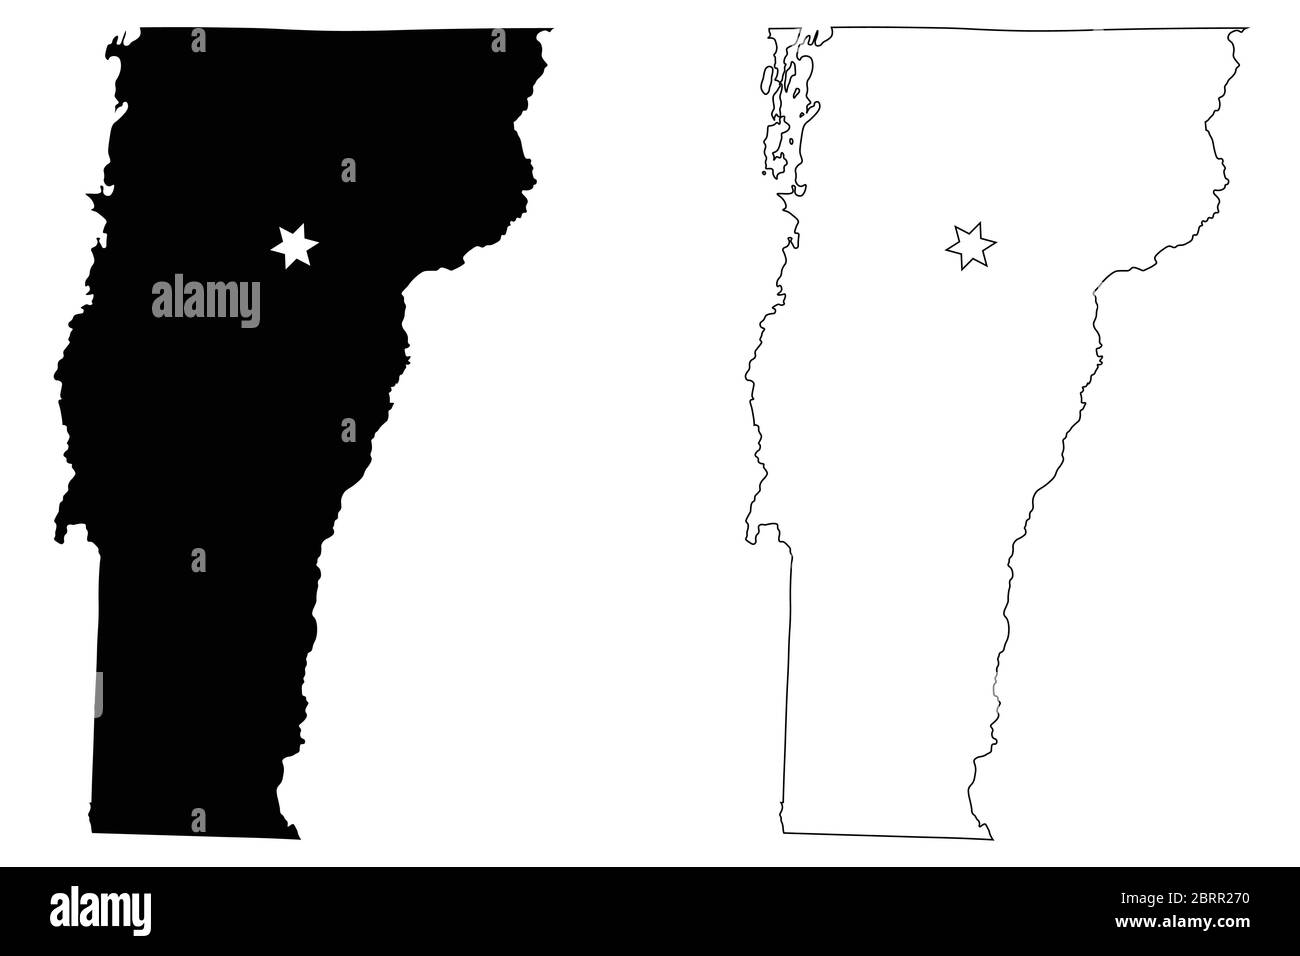 Vermont VT State Map USA mit Capital City Star in Montpelier. Schwarze Silhouette und umreißen isolierte Karten auf weißem Hintergrund. EPS-Vektor Stock Vektor